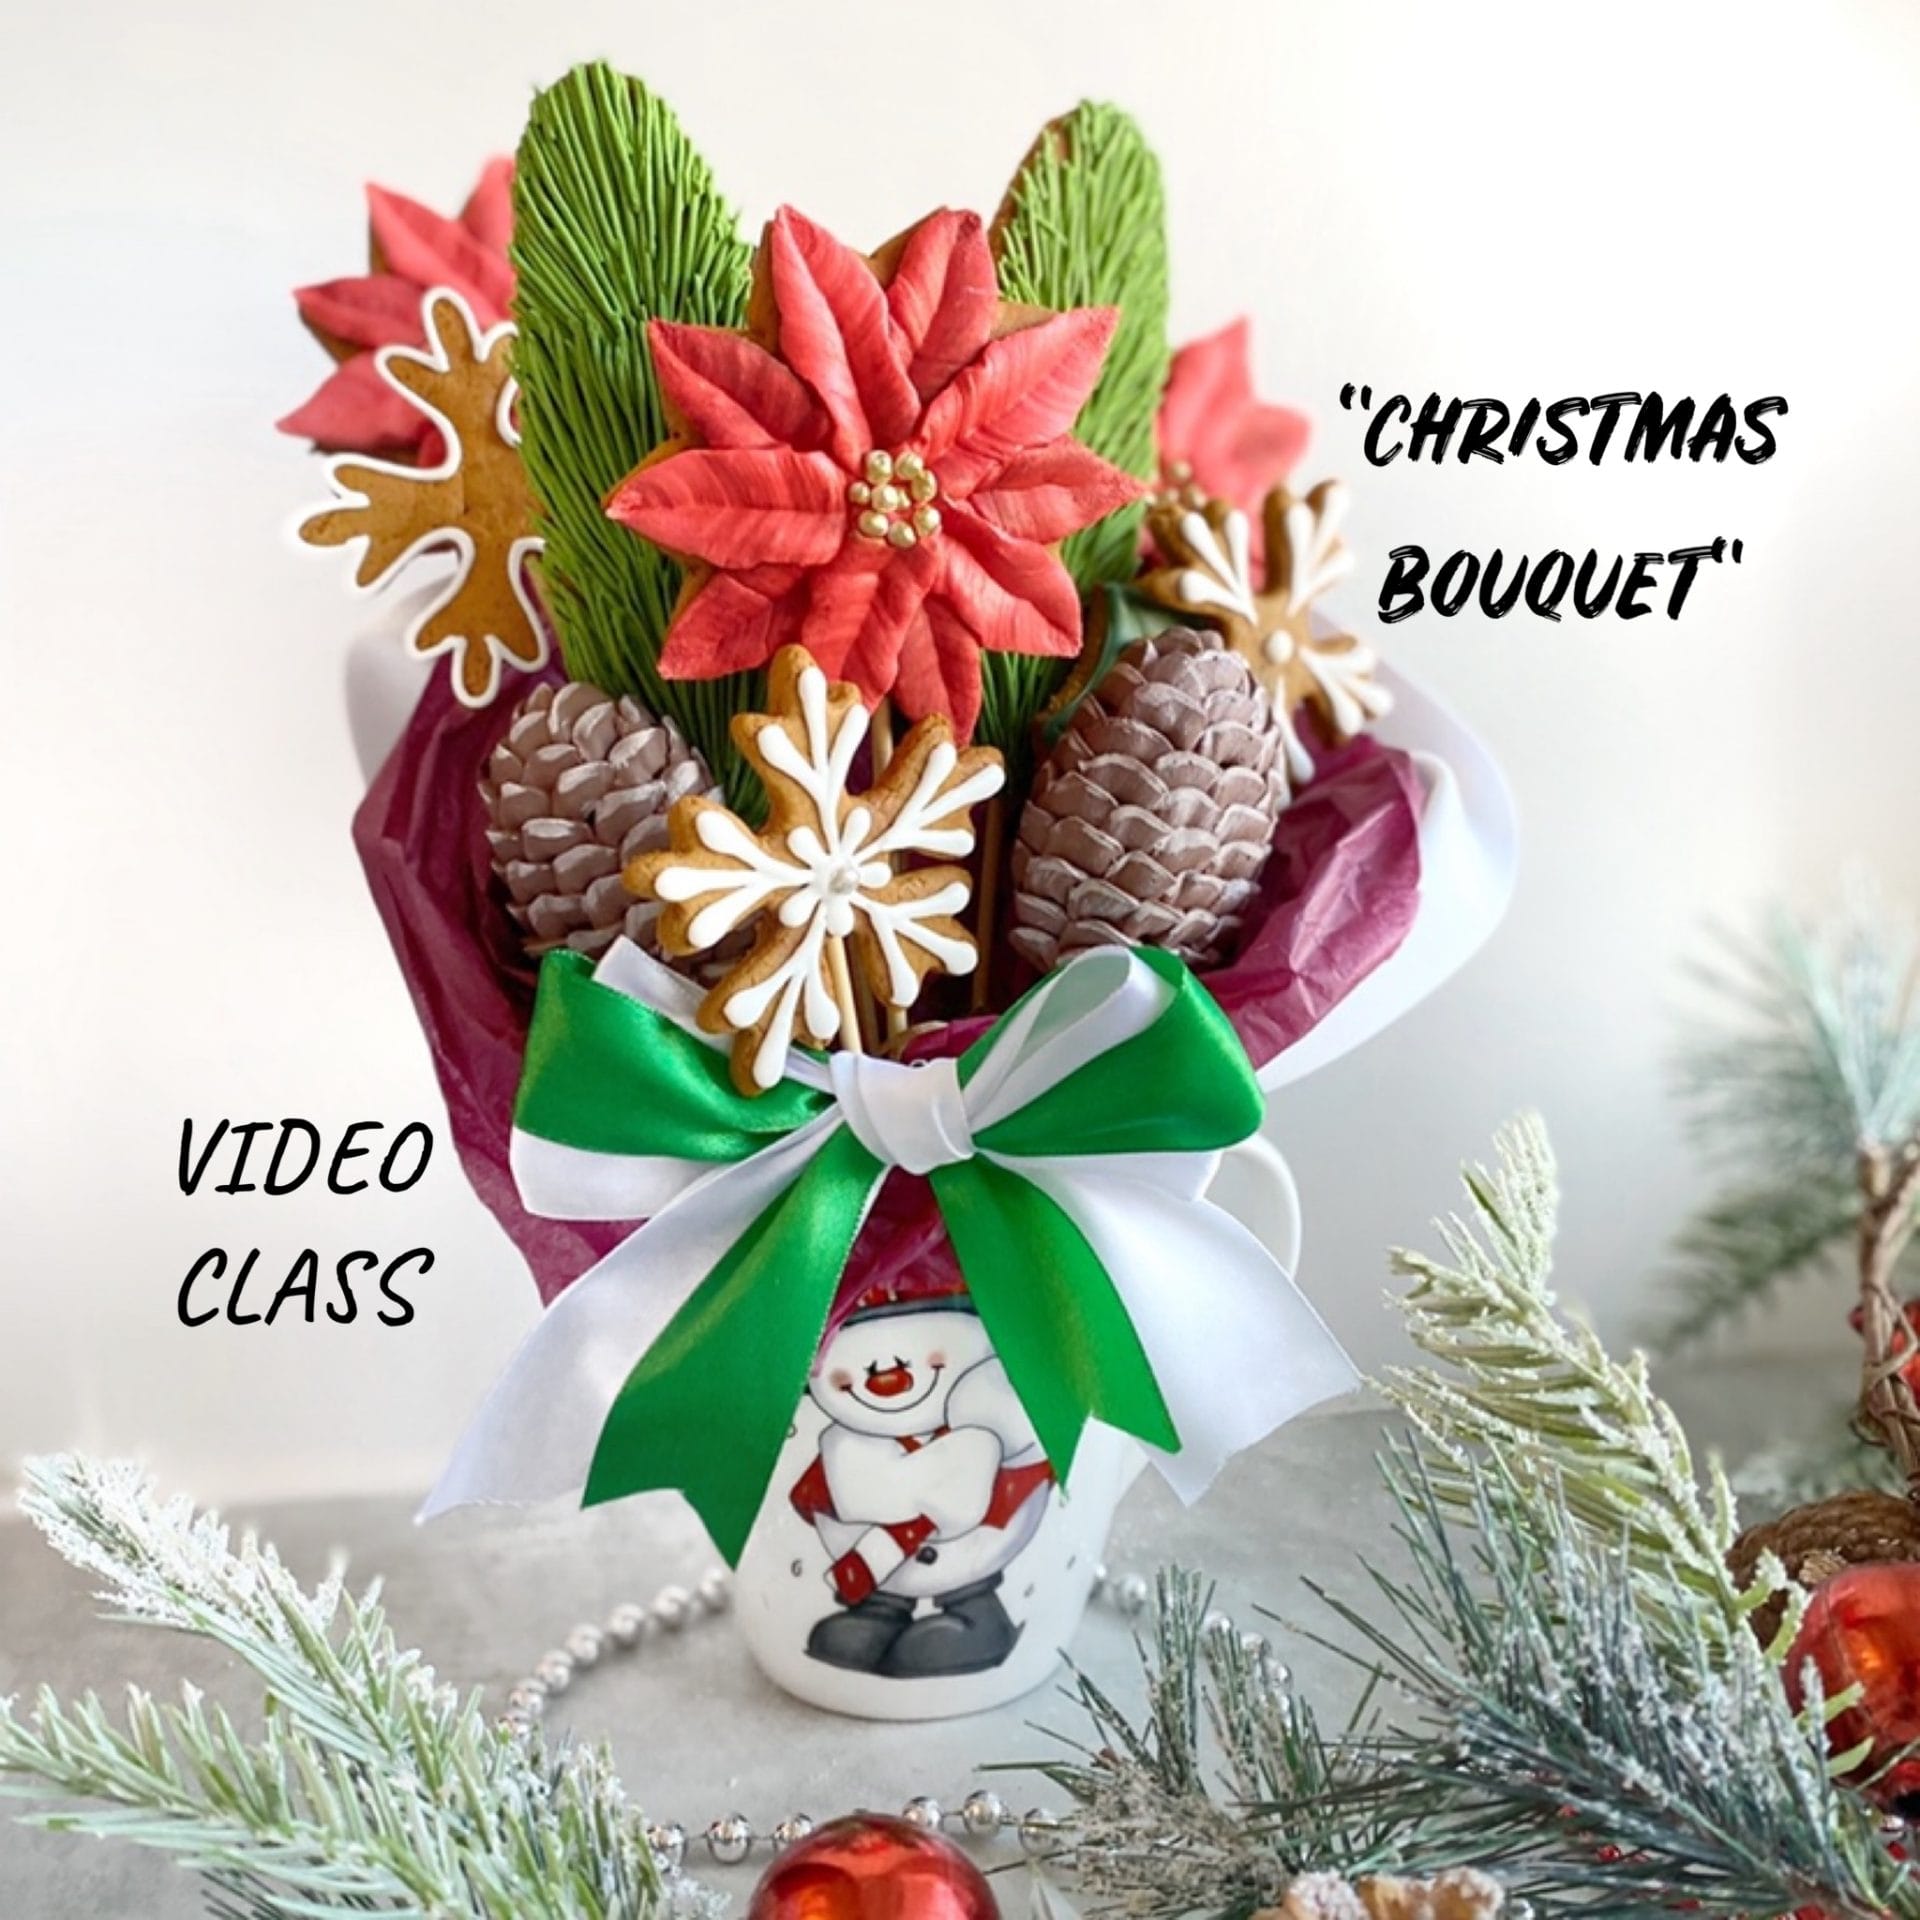 Video class – Christmas bouquet